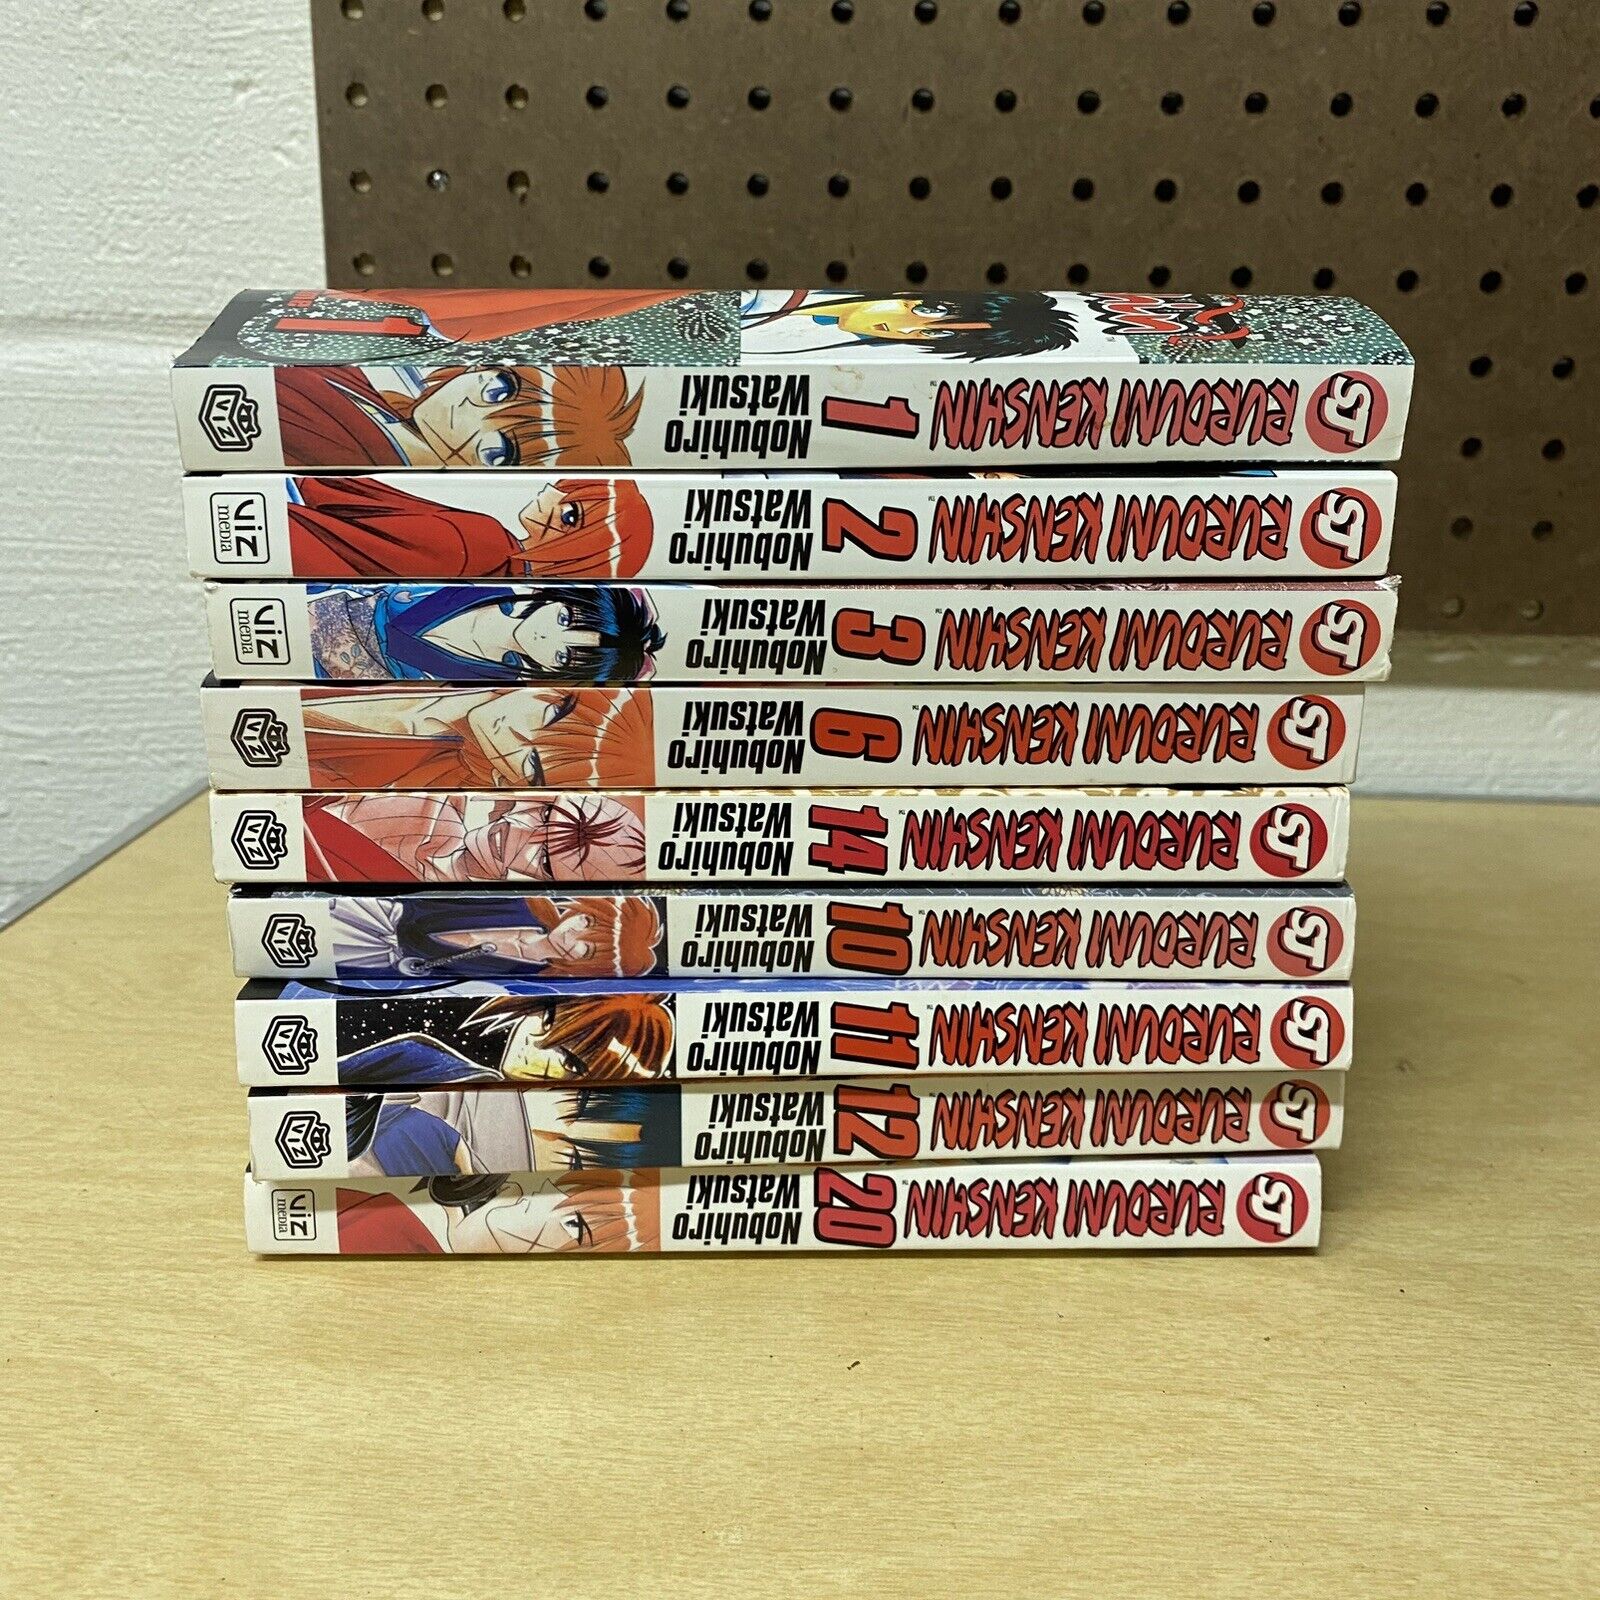 Rurouni Kenshin Volumes Shonen Jump Manga Lot Nobuhiro Watsuki 9 books